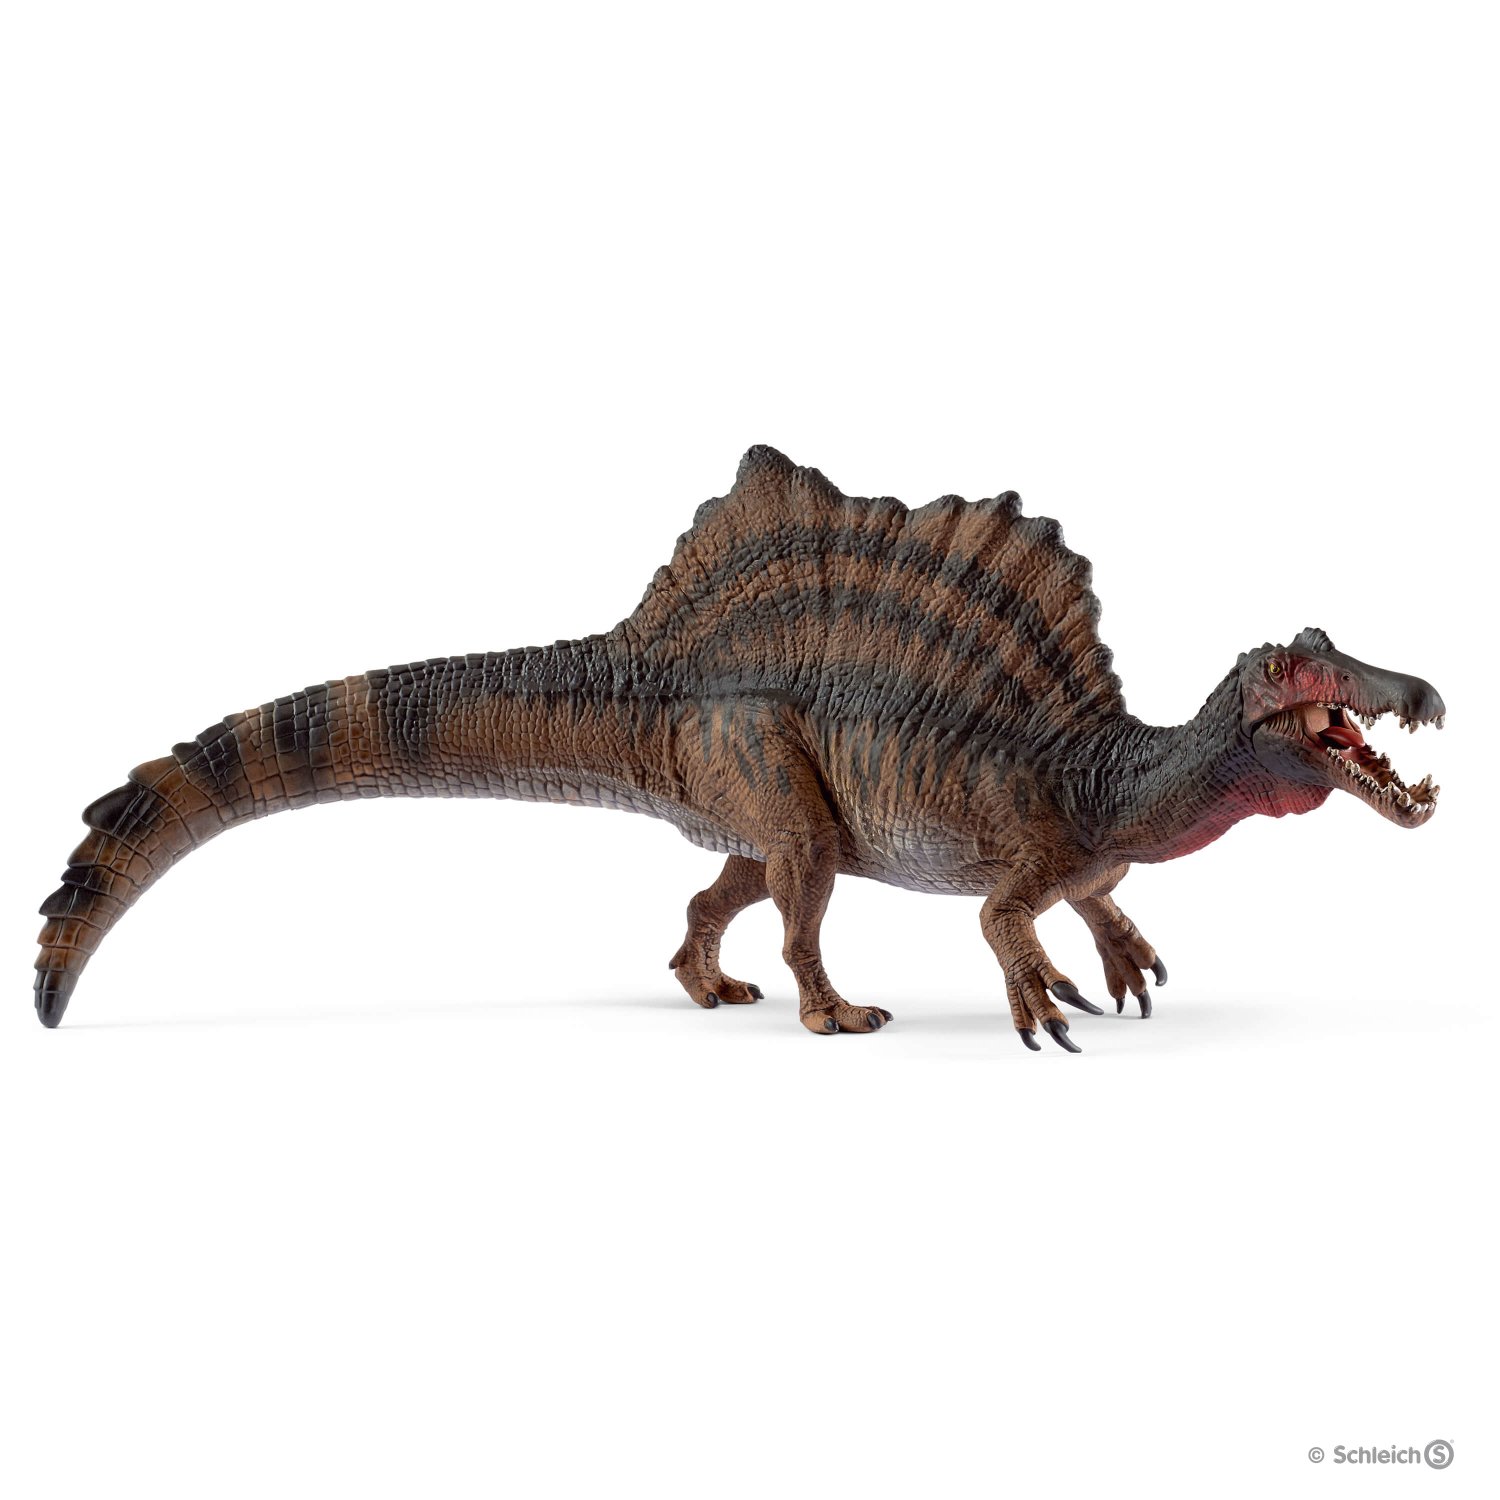 Schleich 15009 - Dinosaurier Spinosaurus